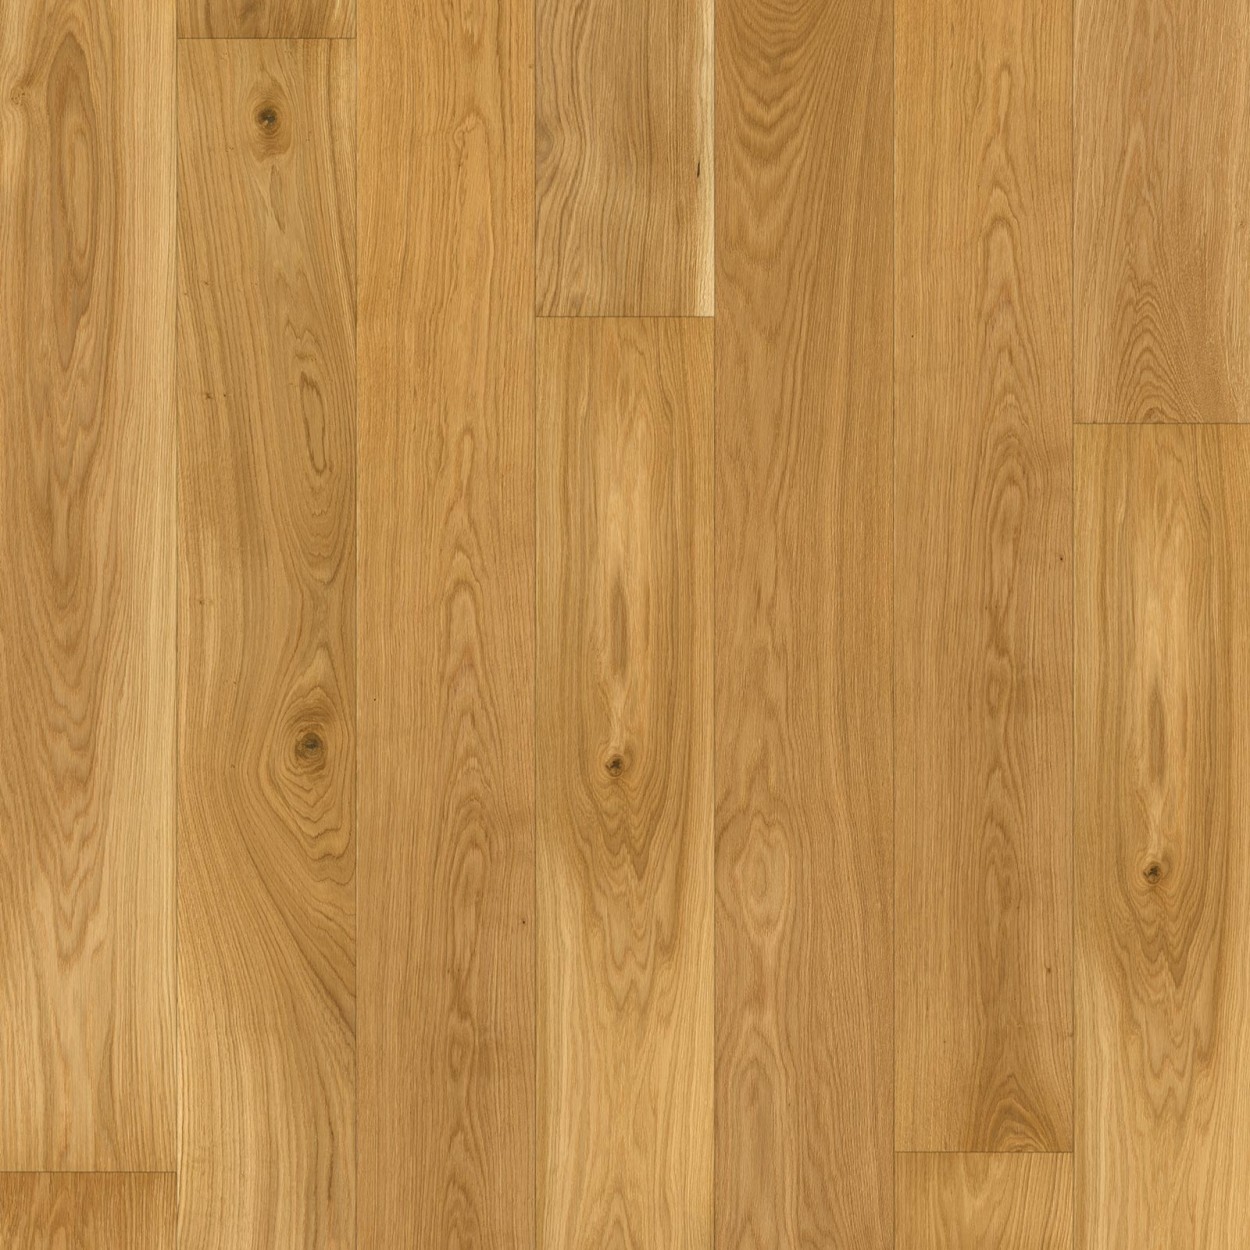 Karras - Ter Hürne - Πάτωμα Προγυαλισμένο Grand Naturals Collection Oak planked